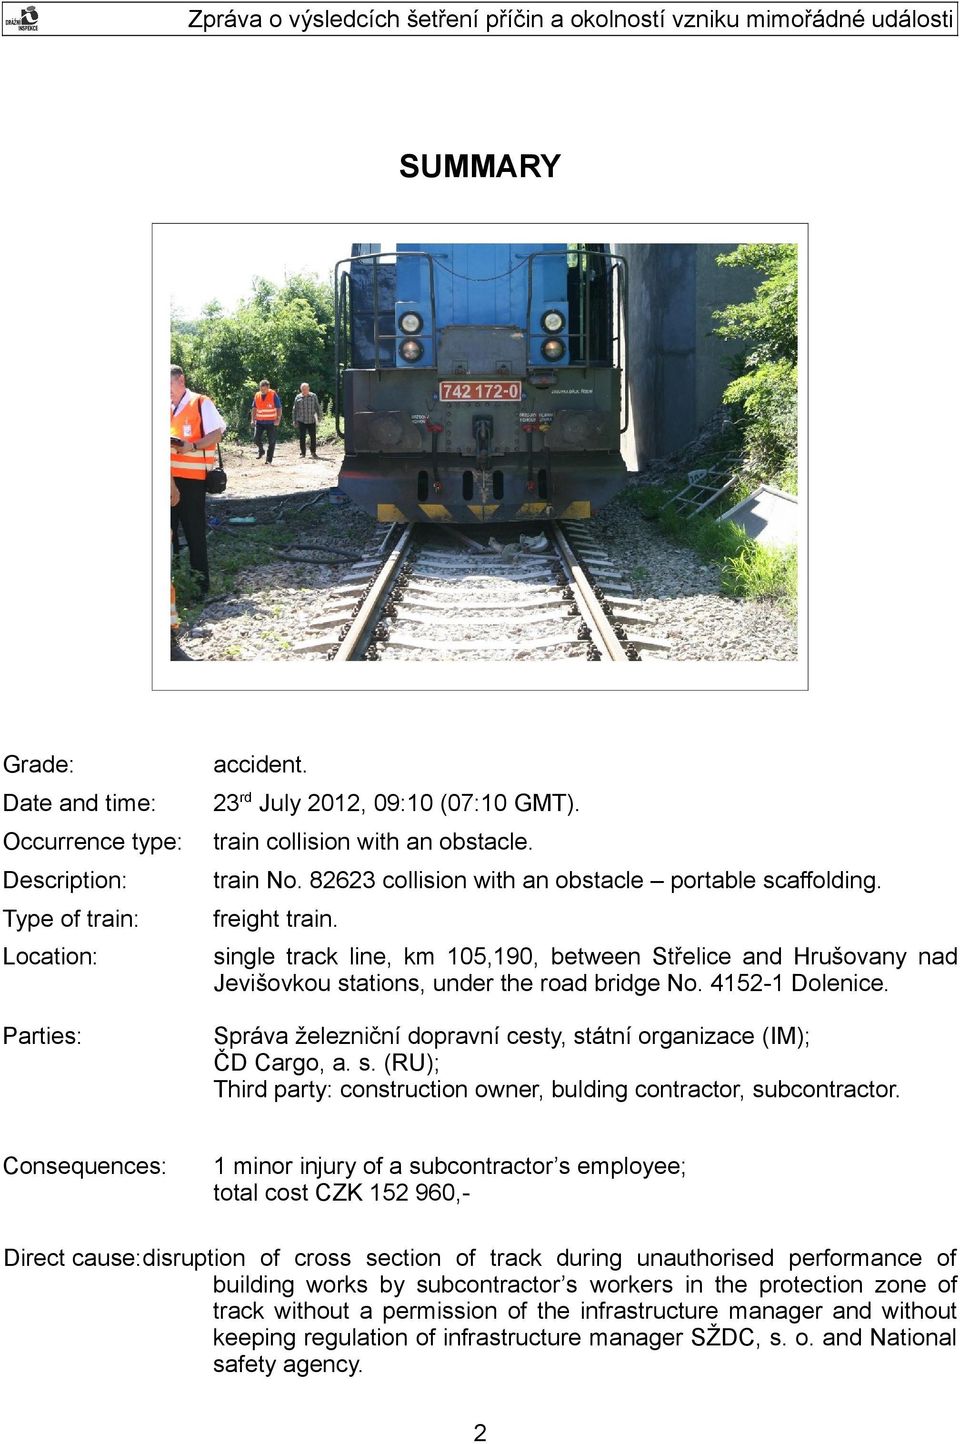 Správa železniční dopravní cesty, státní organizace (IM); ČD Cargo, a. s. (RU); Third party: construction owner, bulding contractor, subcontractor.